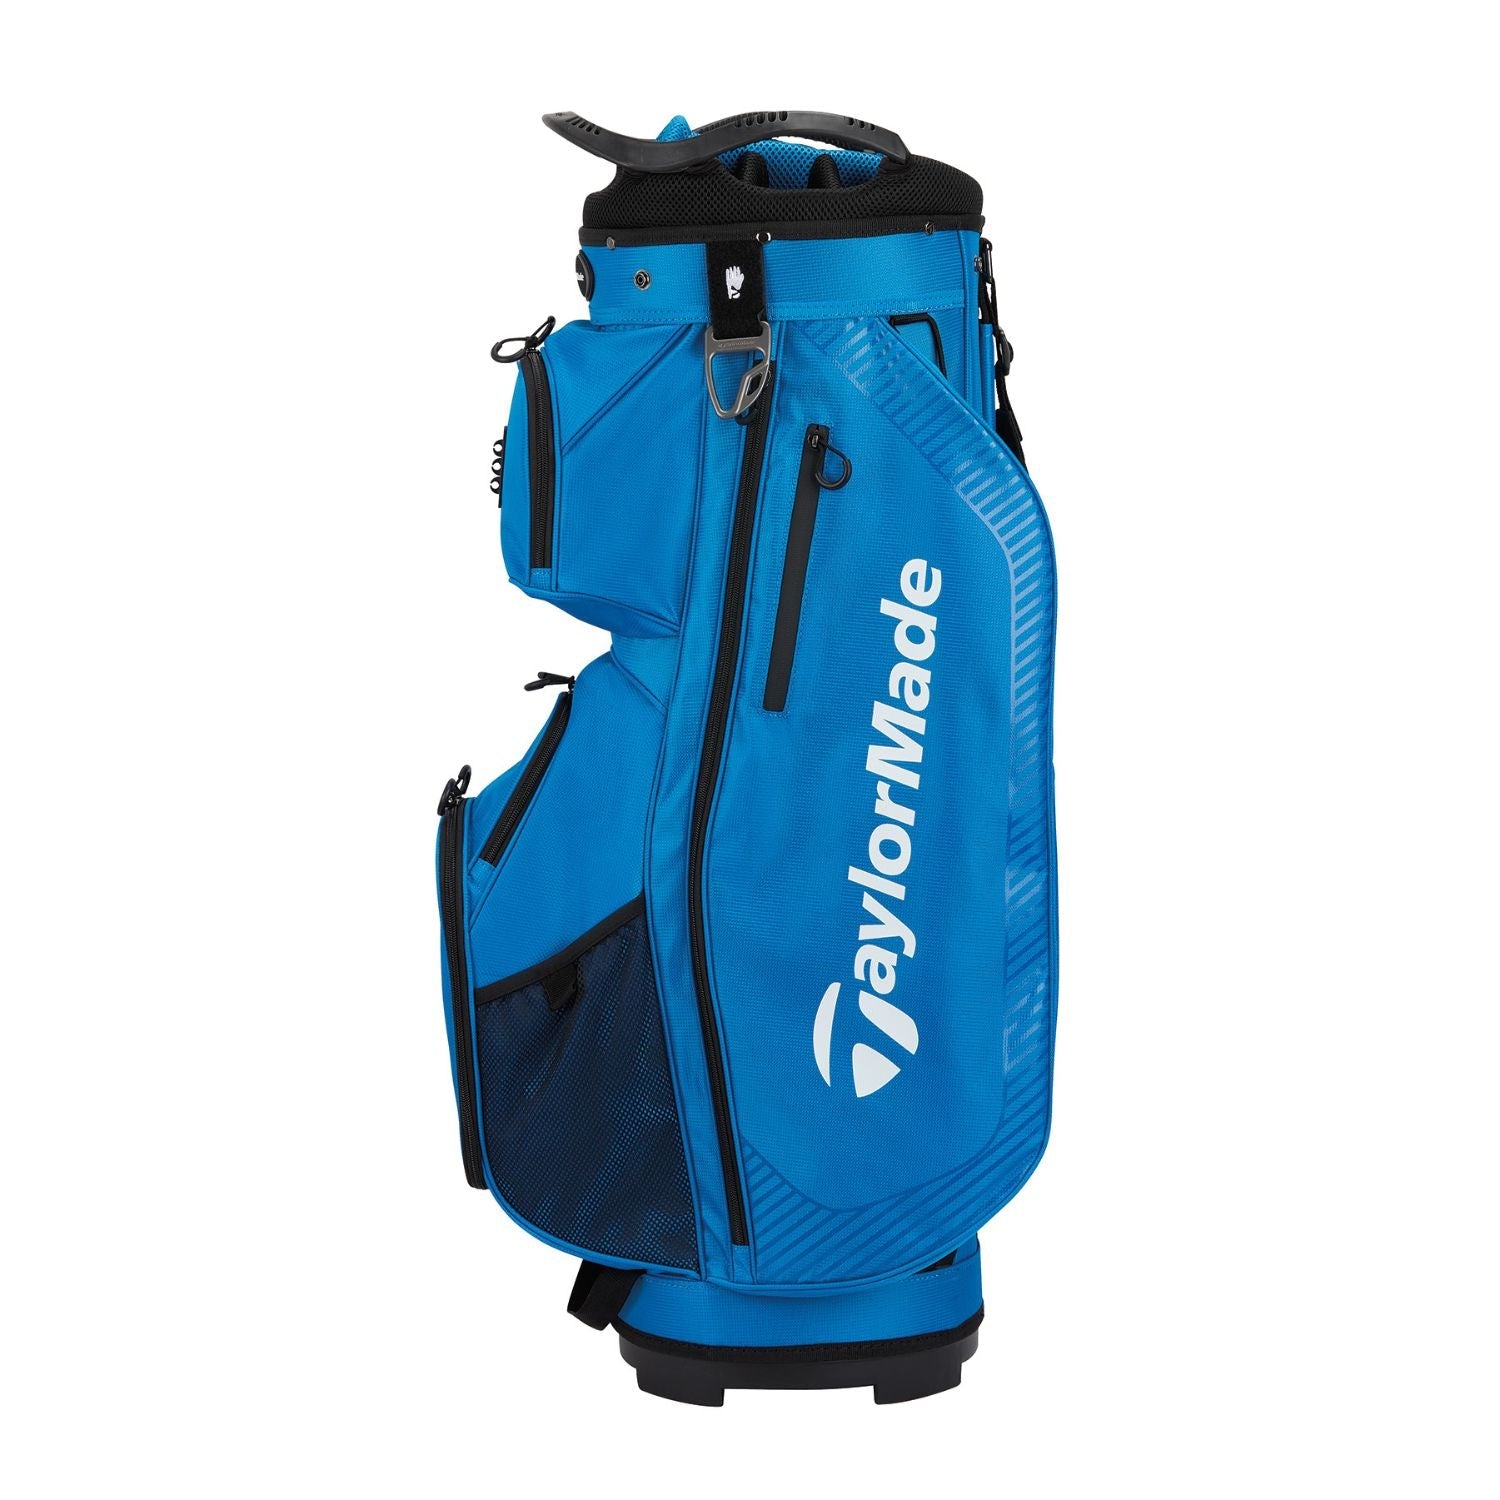 Taylormade Pro Cart Golf Bag (Royal)